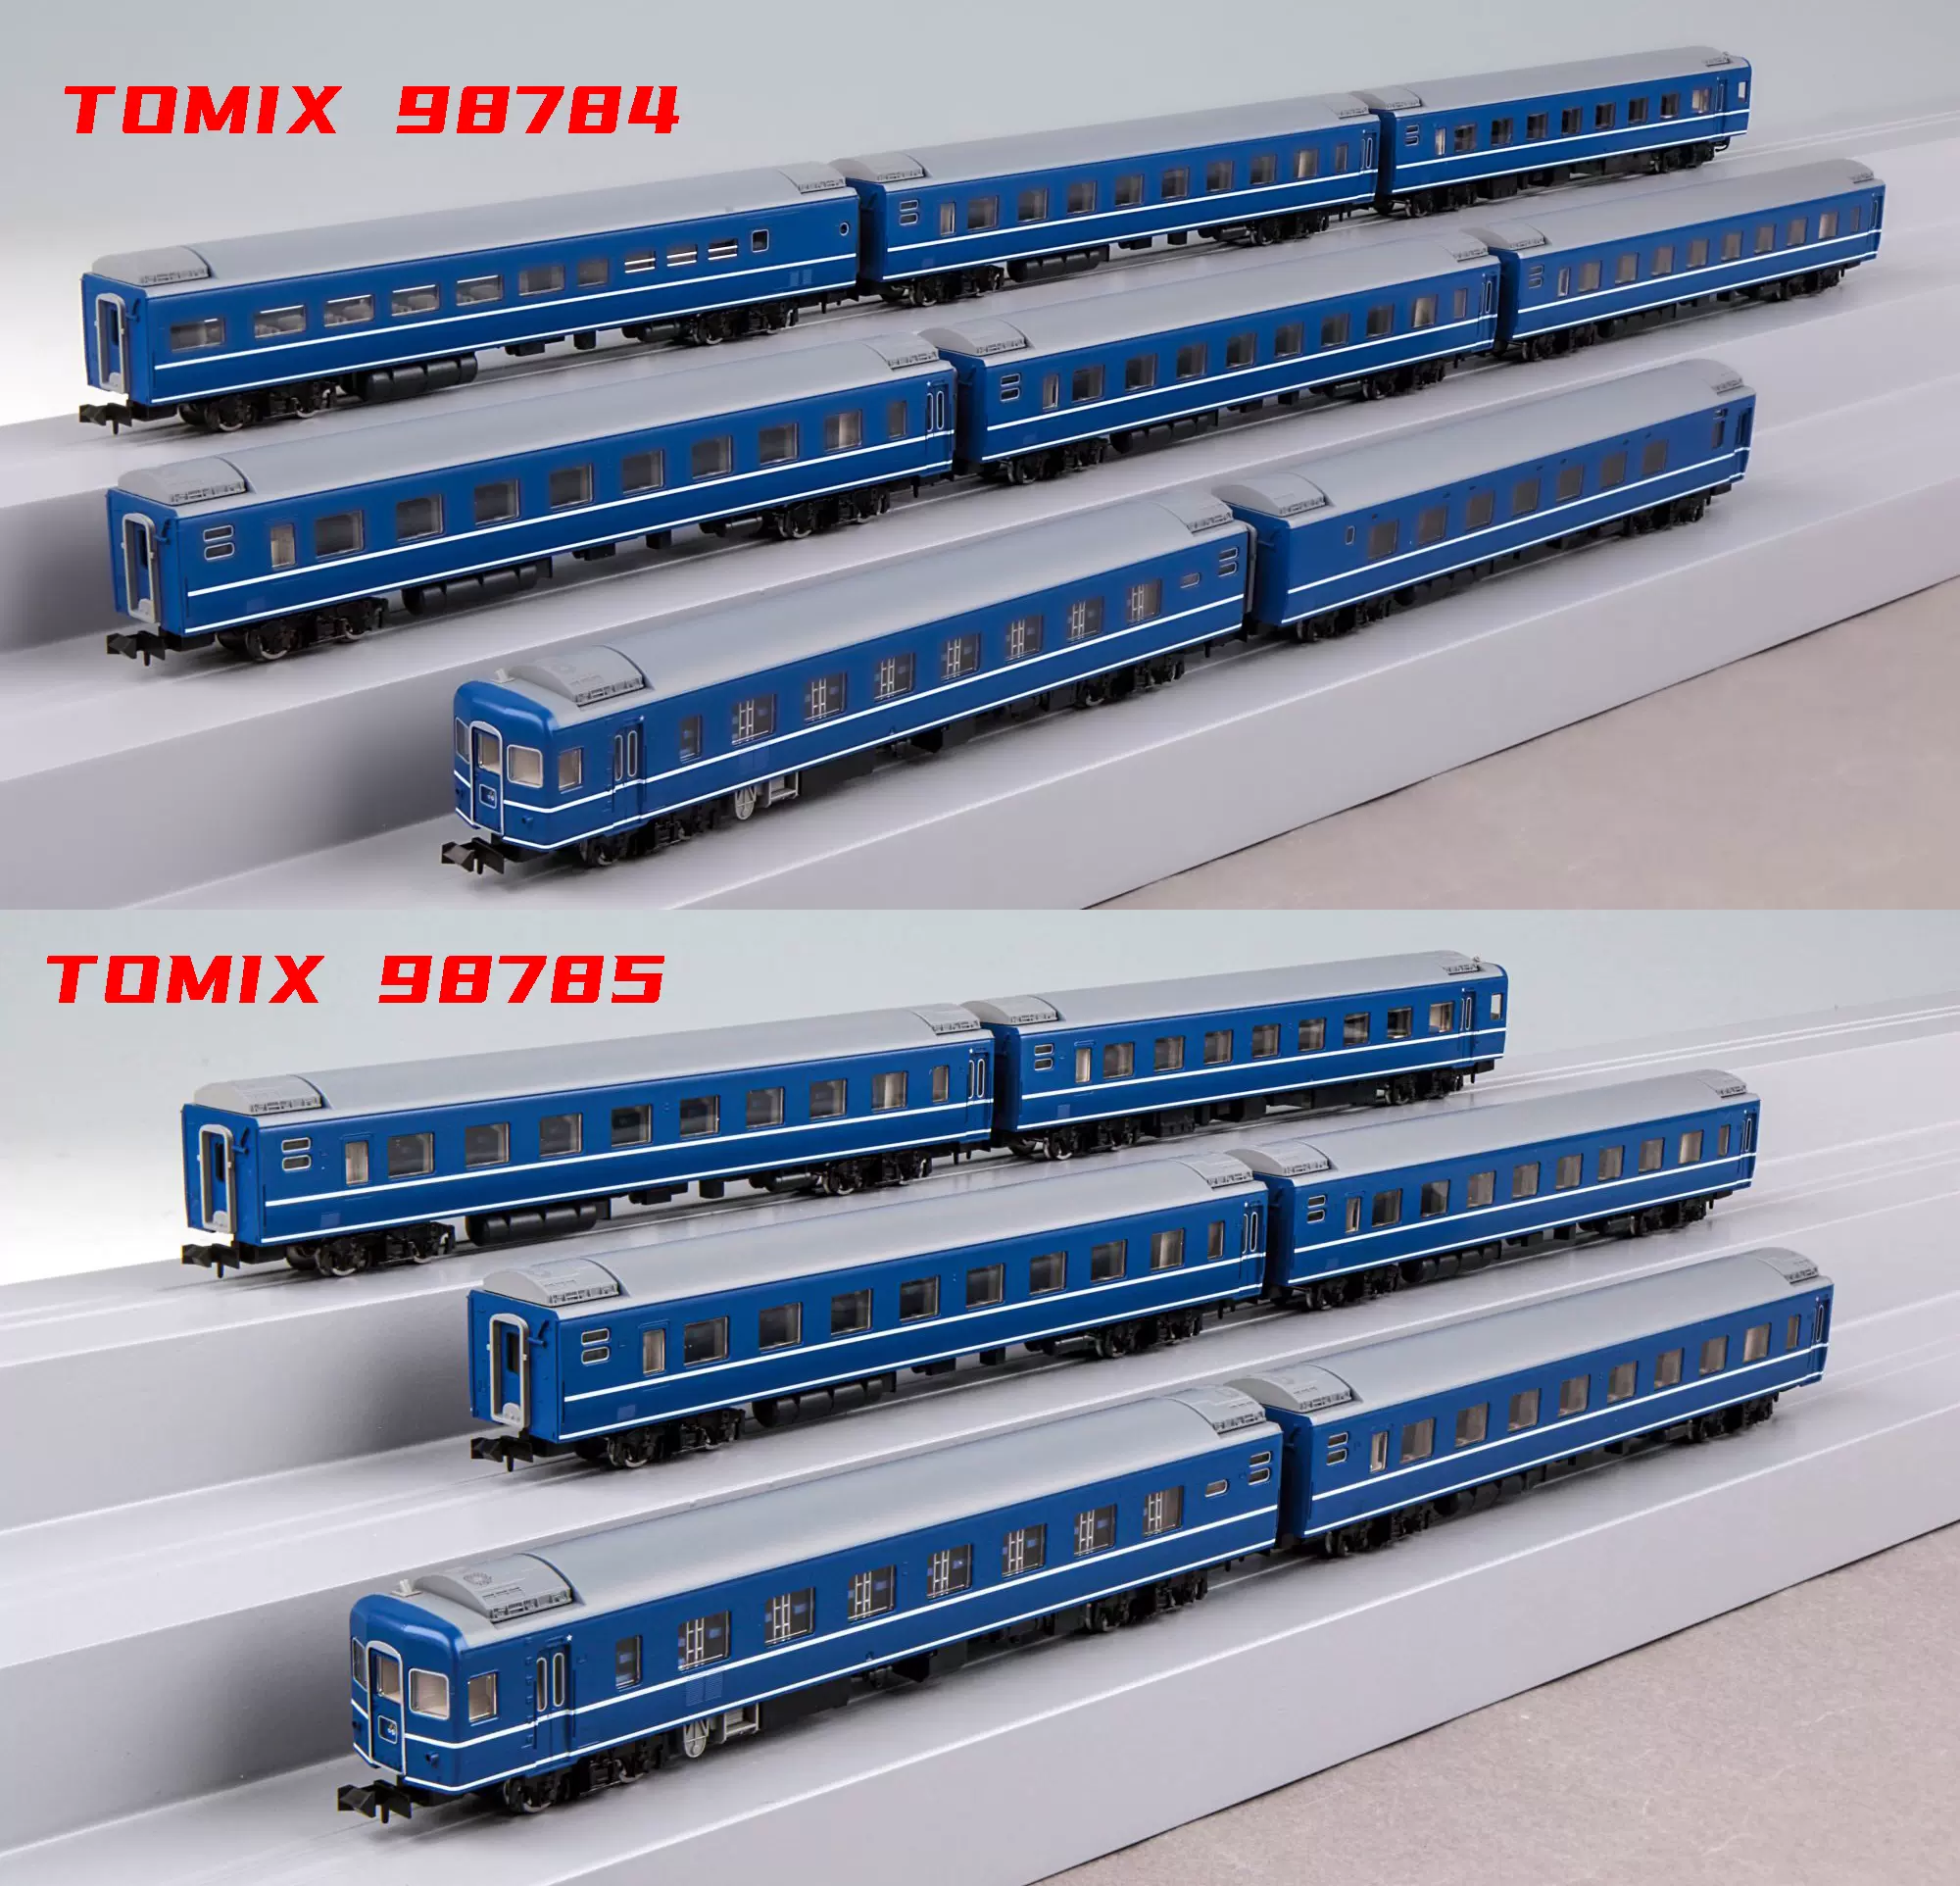 现货]TOMIX 98784/98785 N比例国铁14系特急寝台客车樱花-Taobao